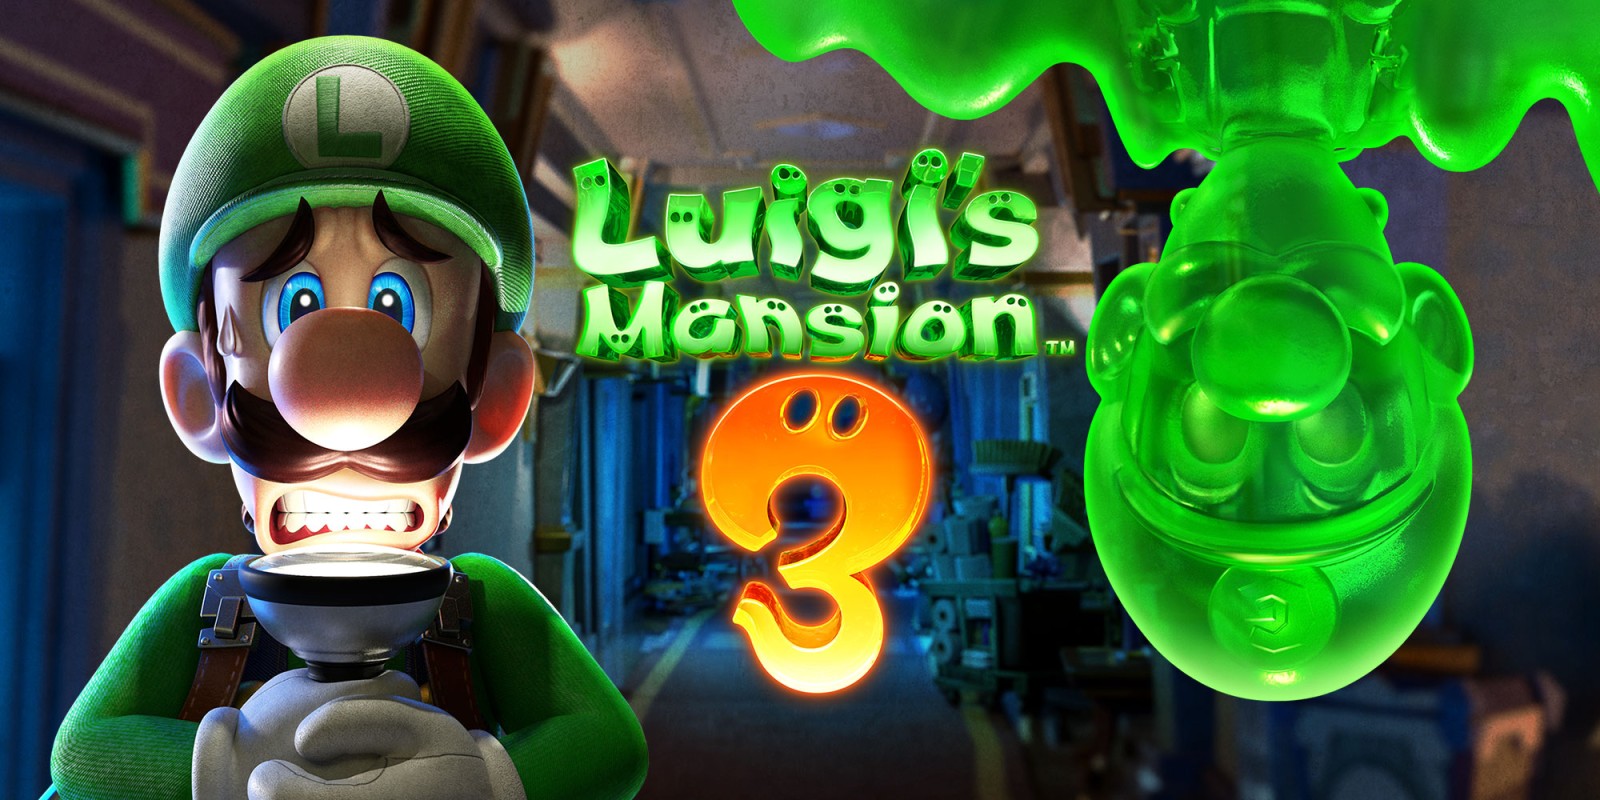 Luigis mansion 3 image